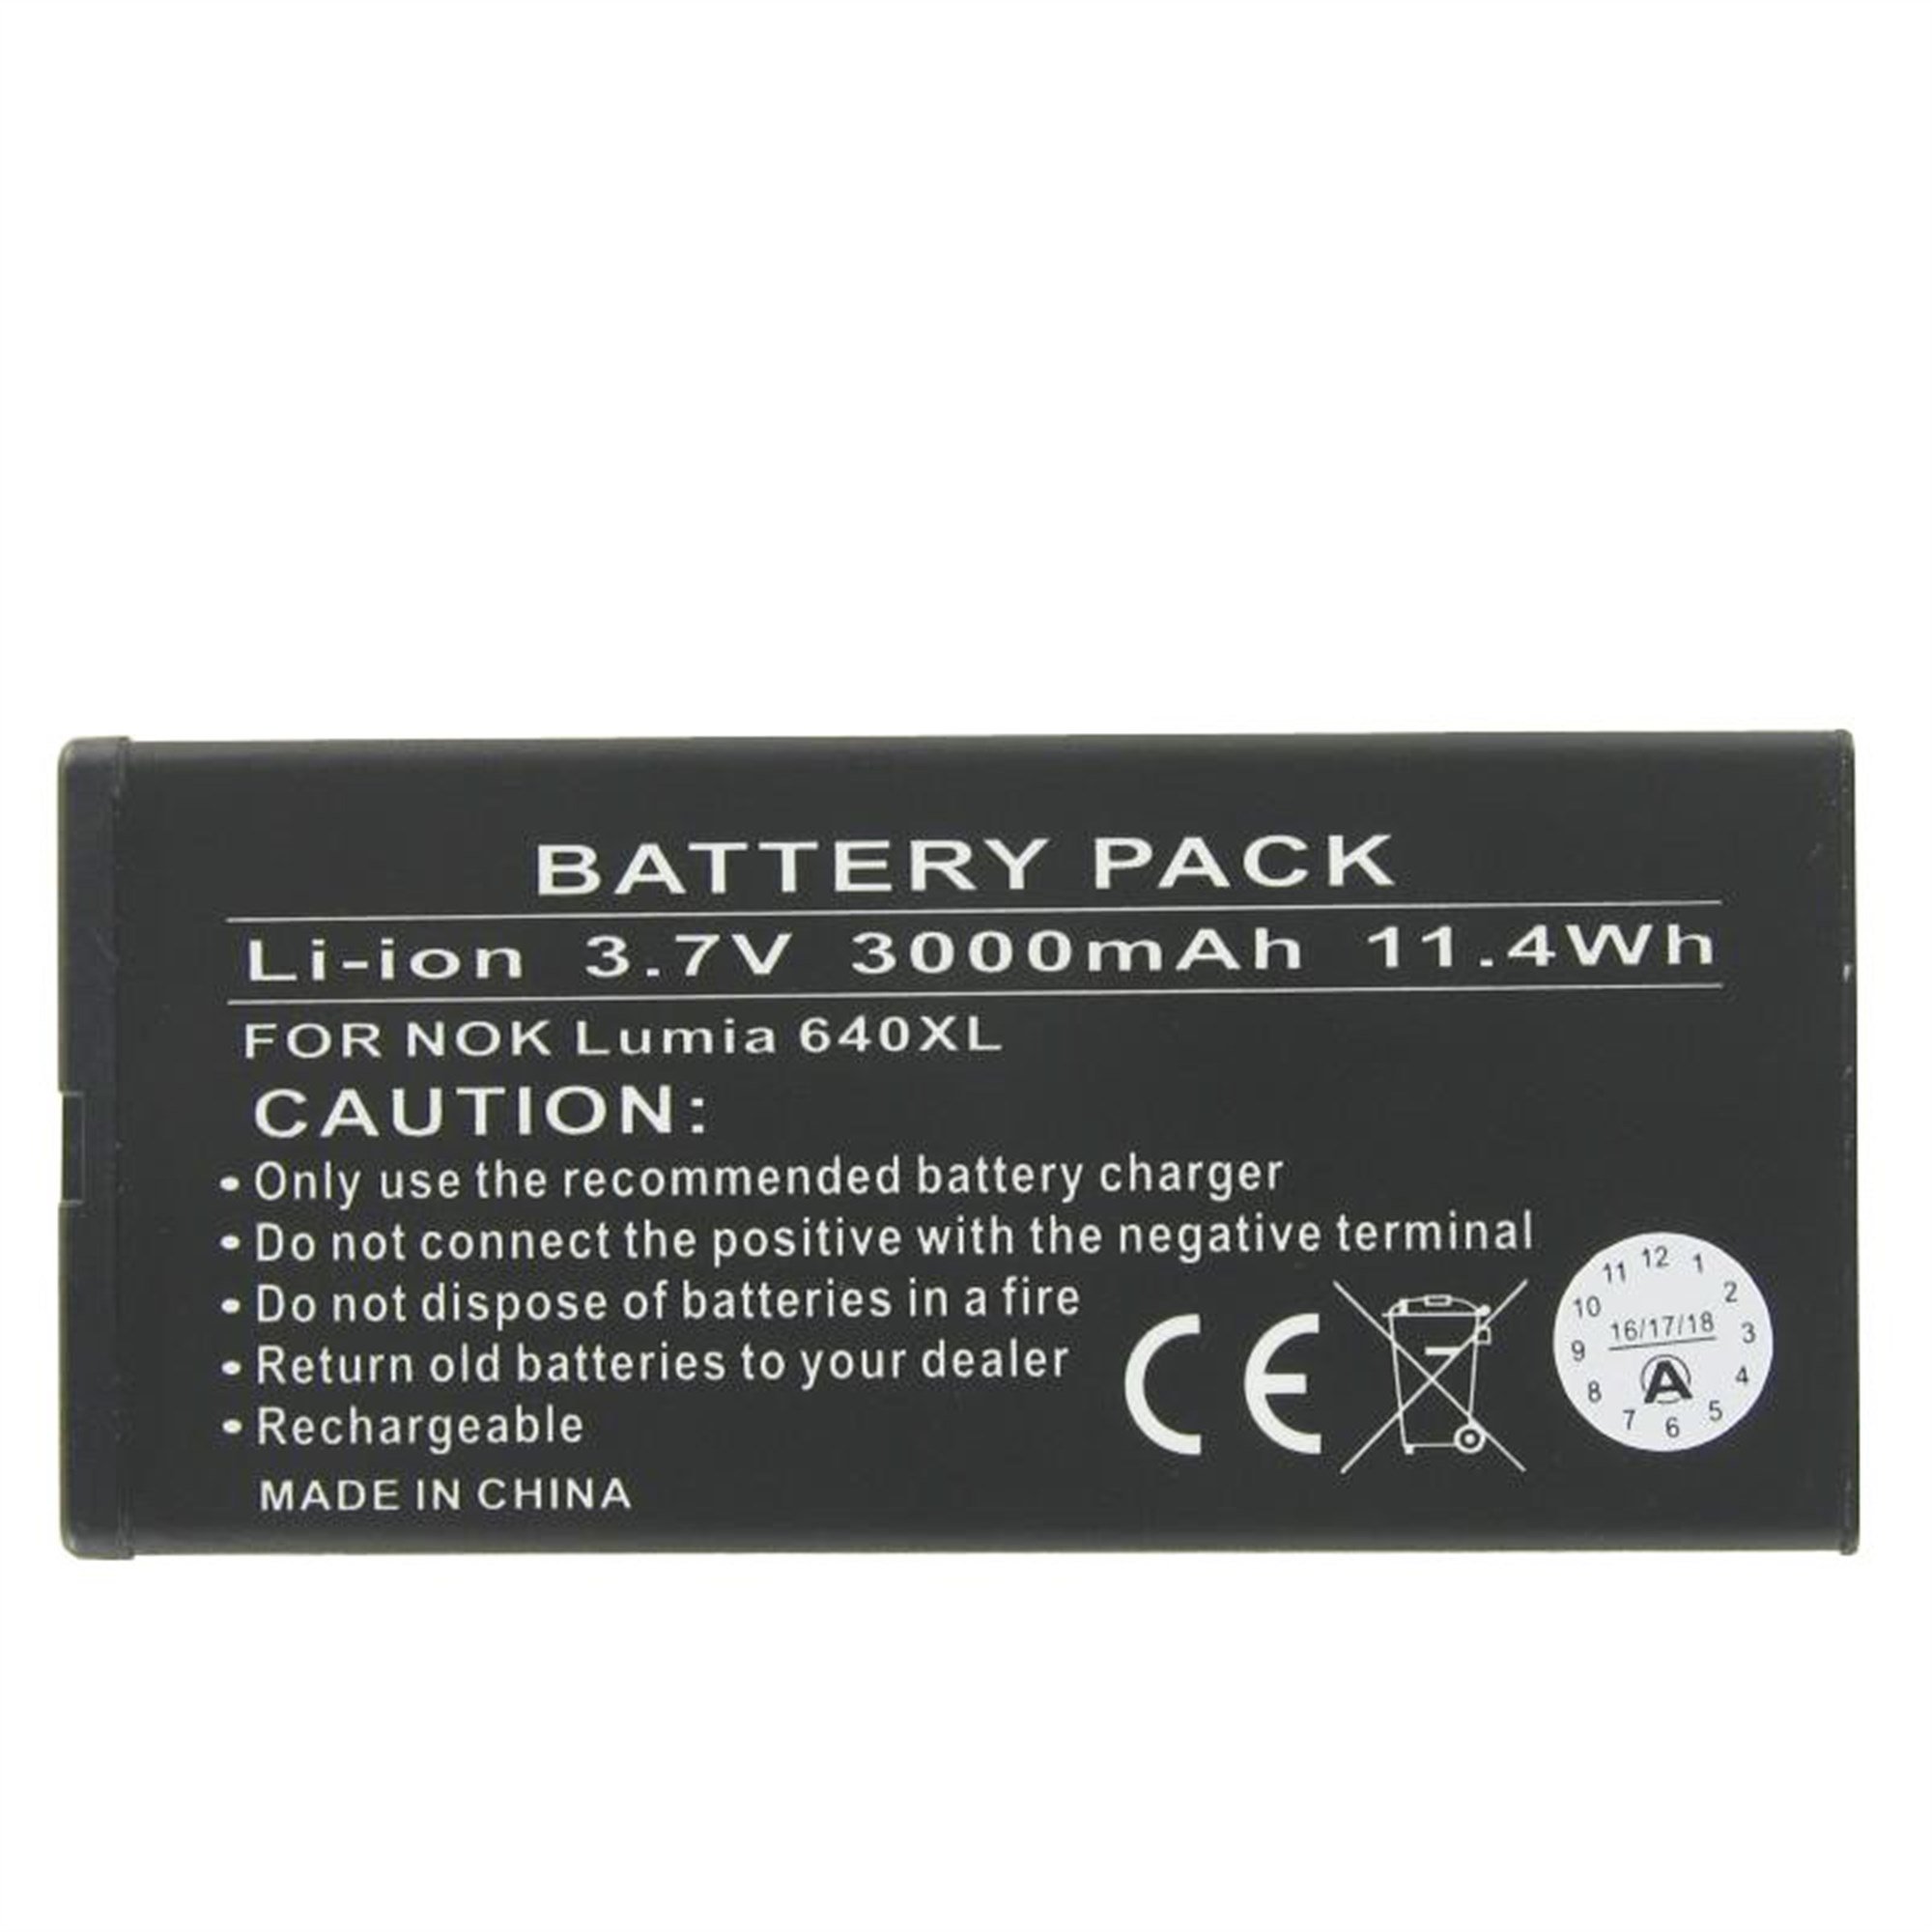 Nokia BV-T4B batarya için Nokia Lumia 640 XL batarya için uygun batarya